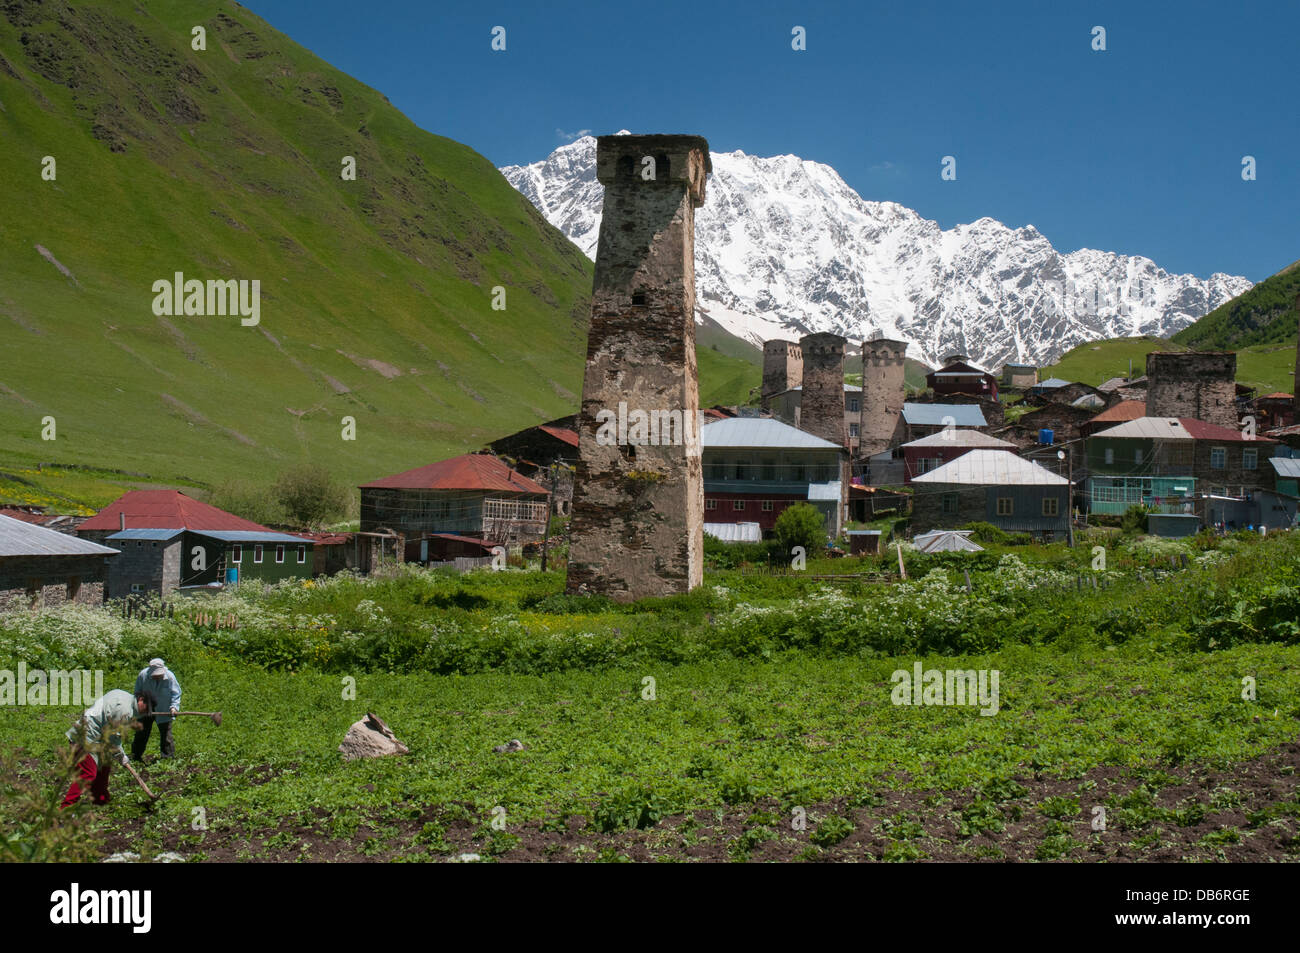 Ushguli plus haut d'Europe, habitée en permanence-village, dans la région de Svaneti à distance de la Géorgie Banque D'Images